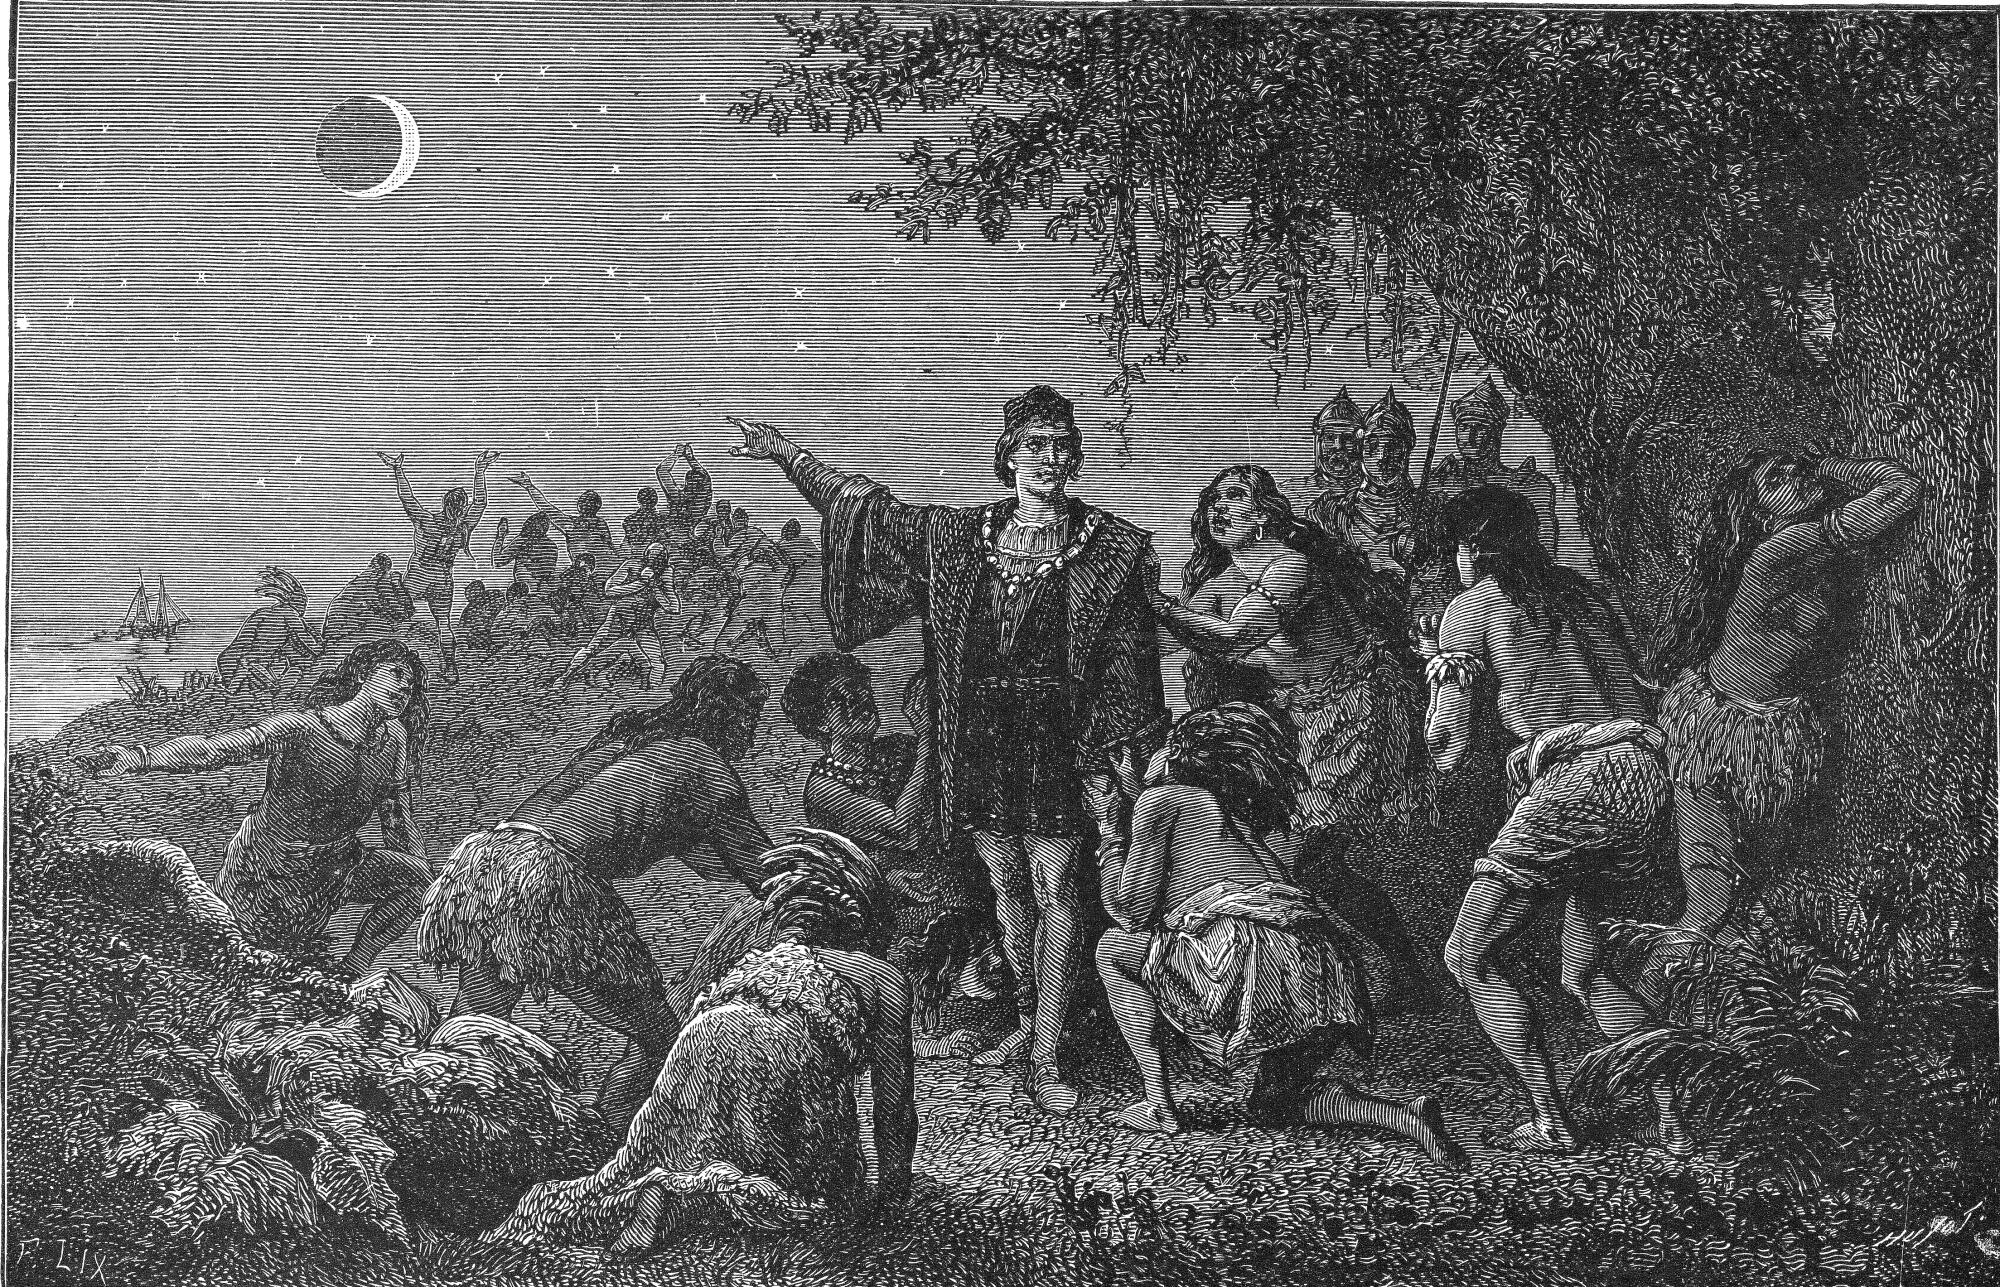   Эскиз Колумба, указывающего на лунное затмение в окружении людей, стоящих на коленях.